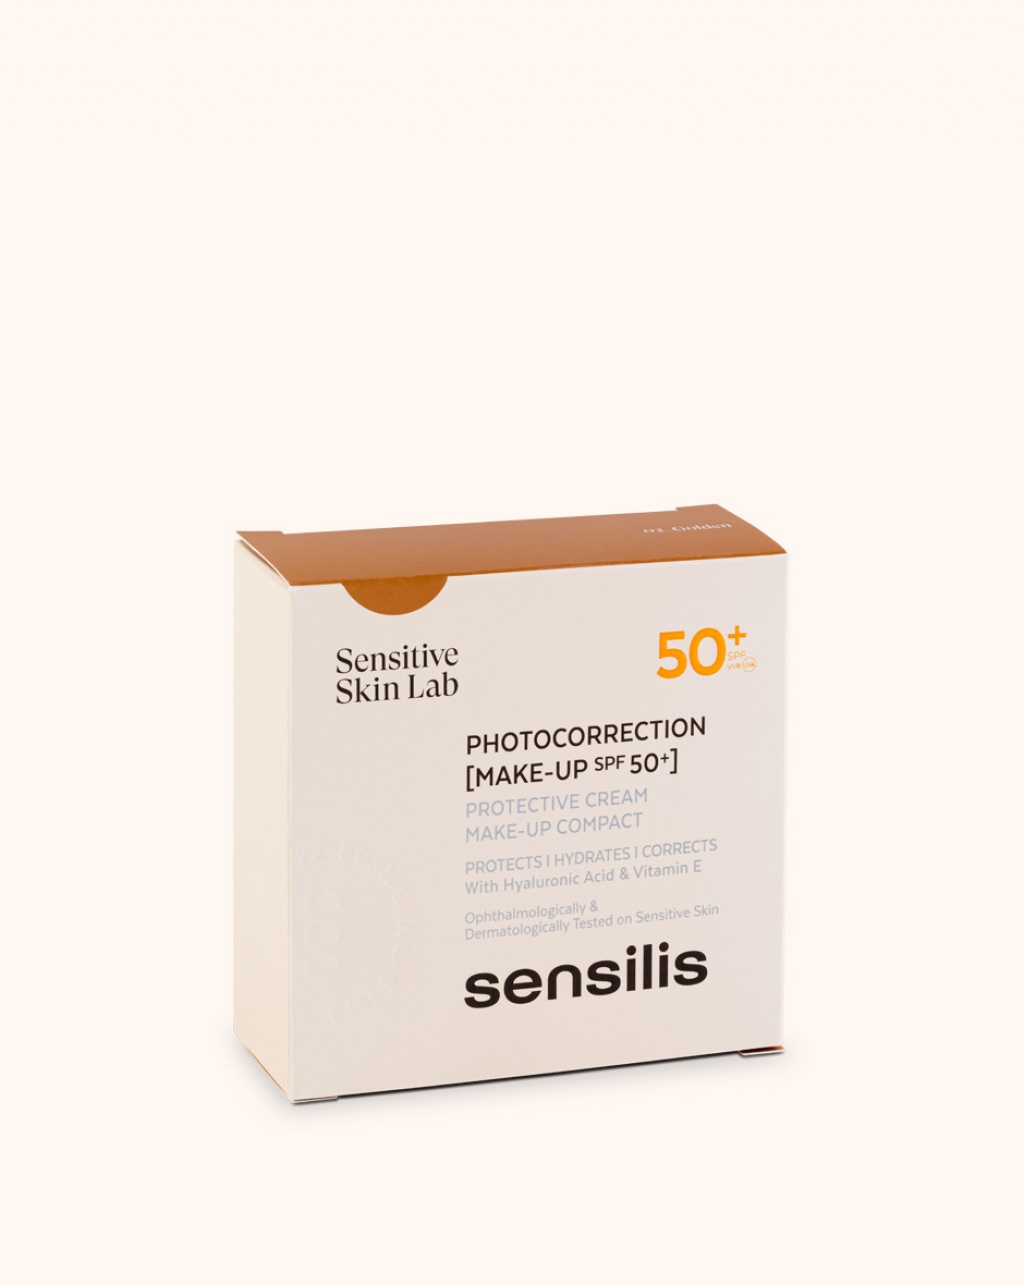 Sensilis Photocorrection 50+ SPF maquillaje compacto golden 10 g